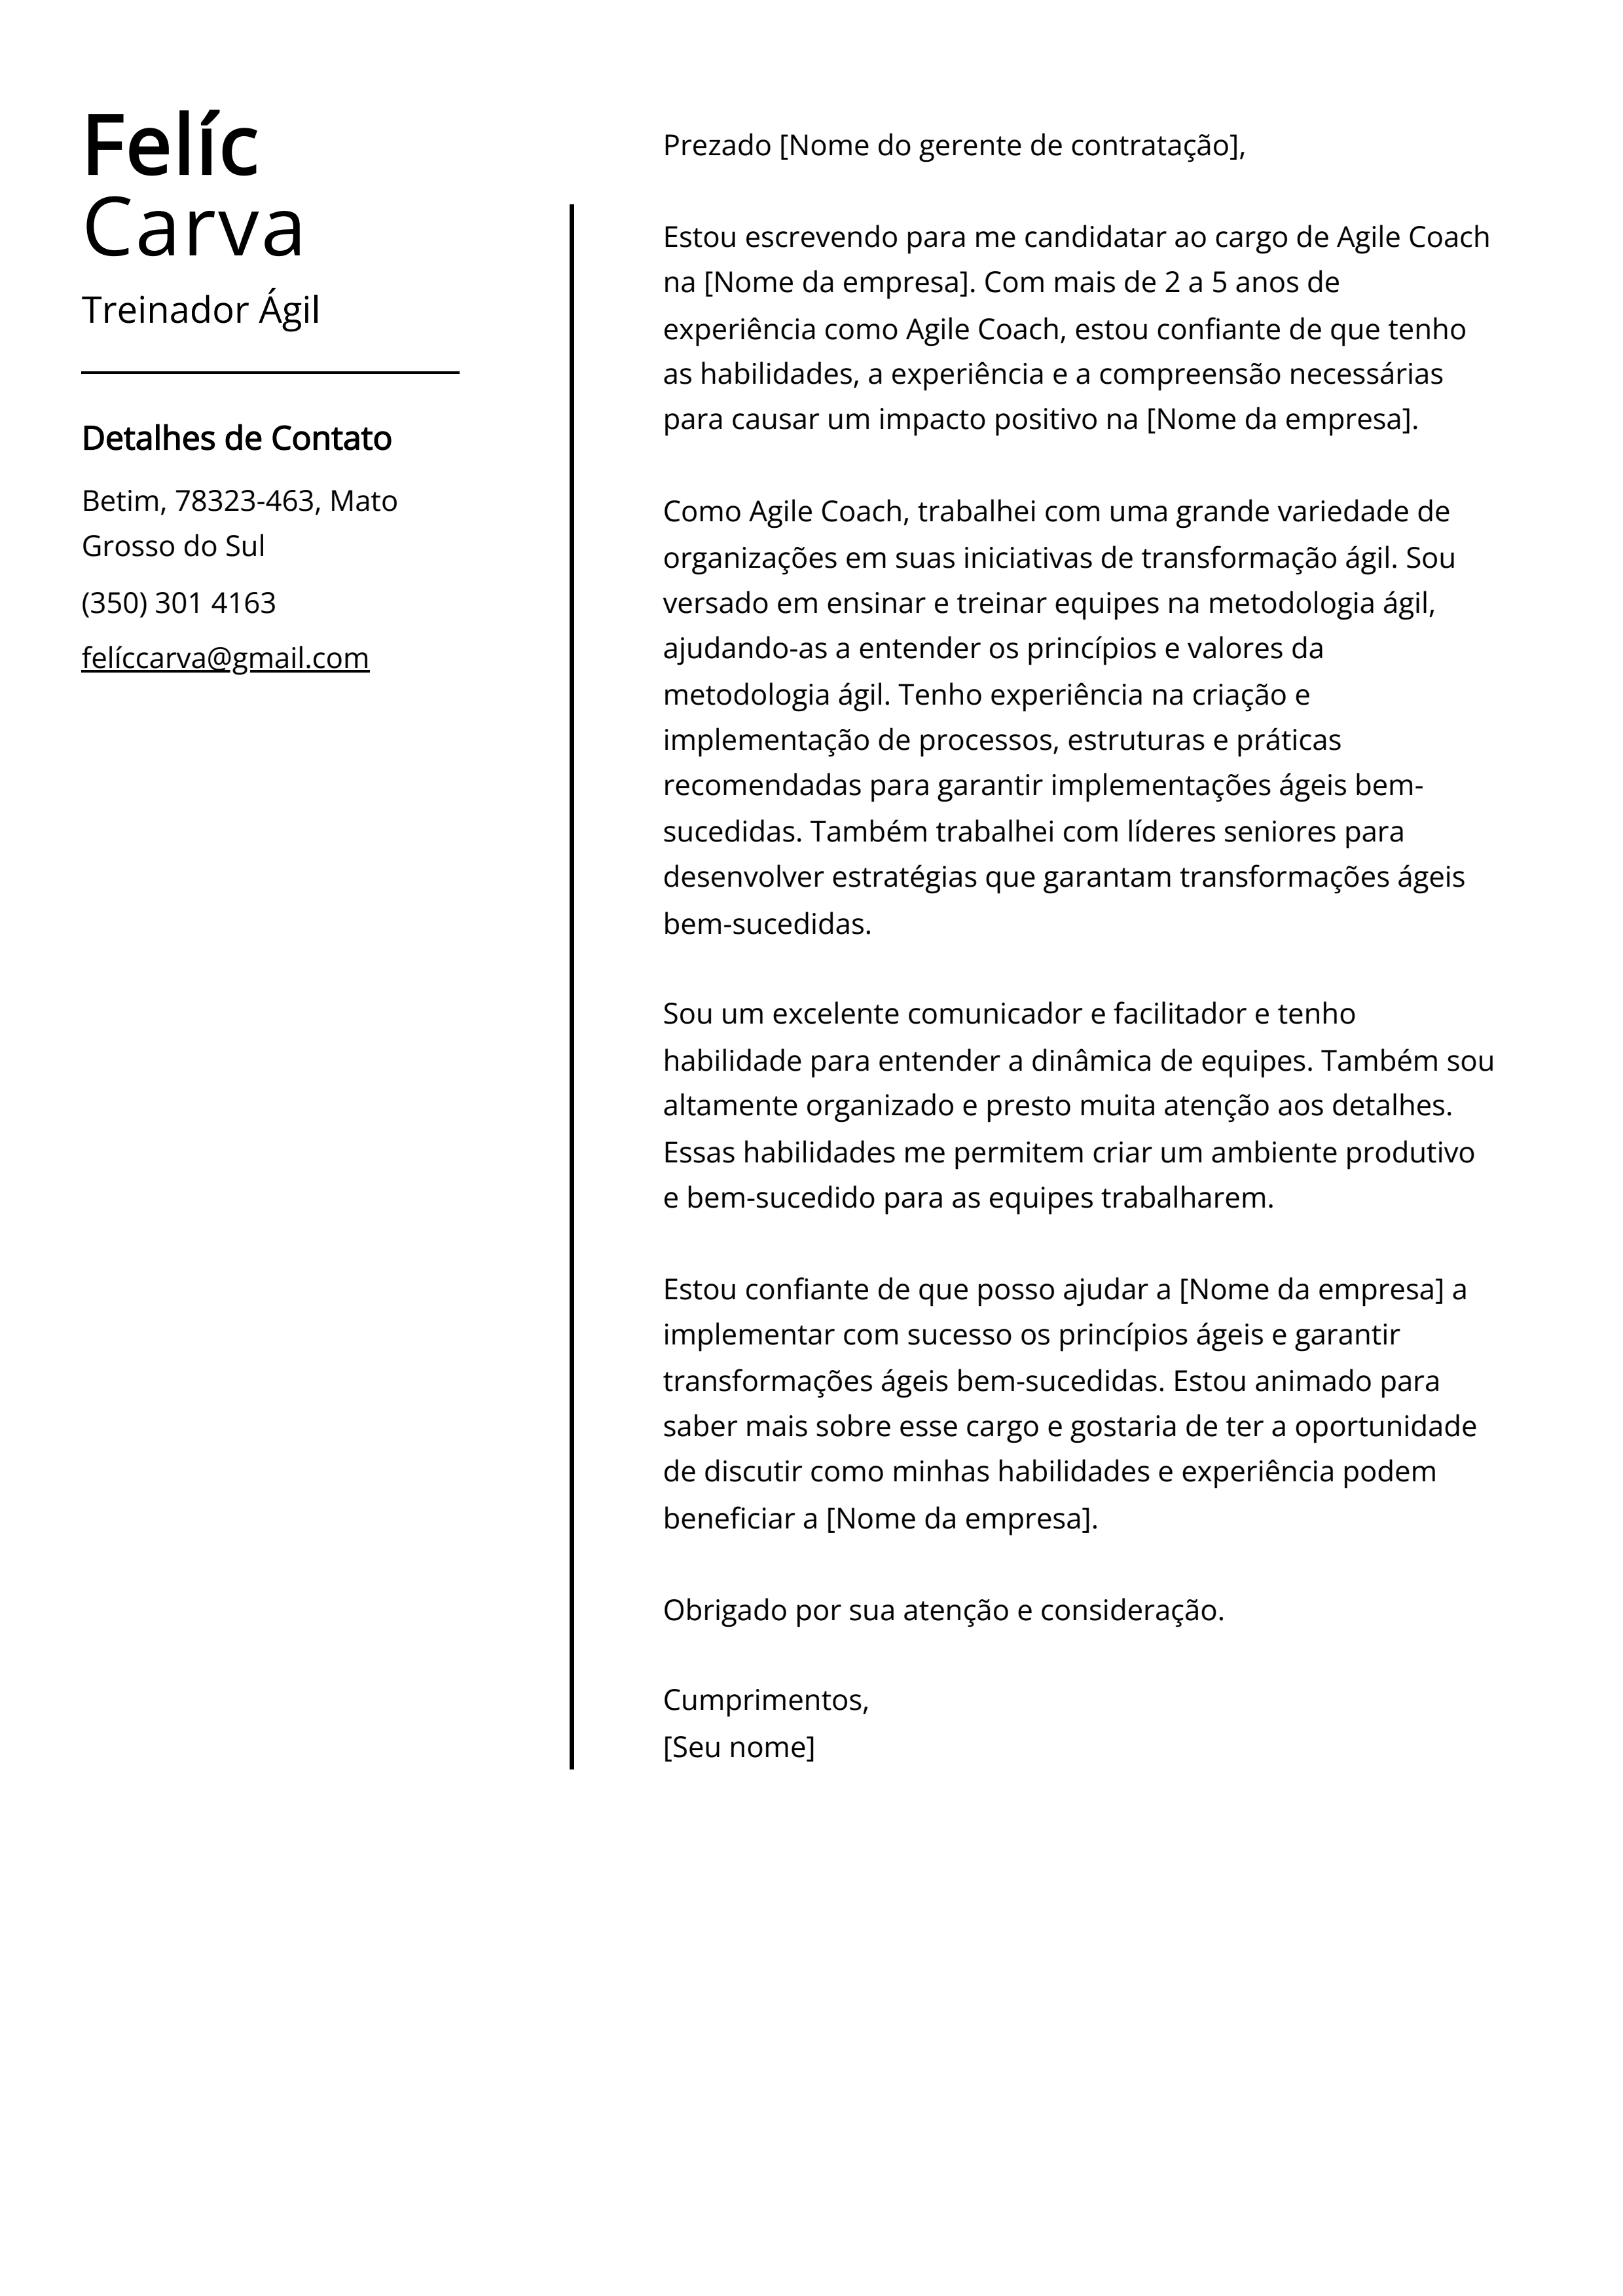 Exemplo de carta de apresentação do Treinador Ágil